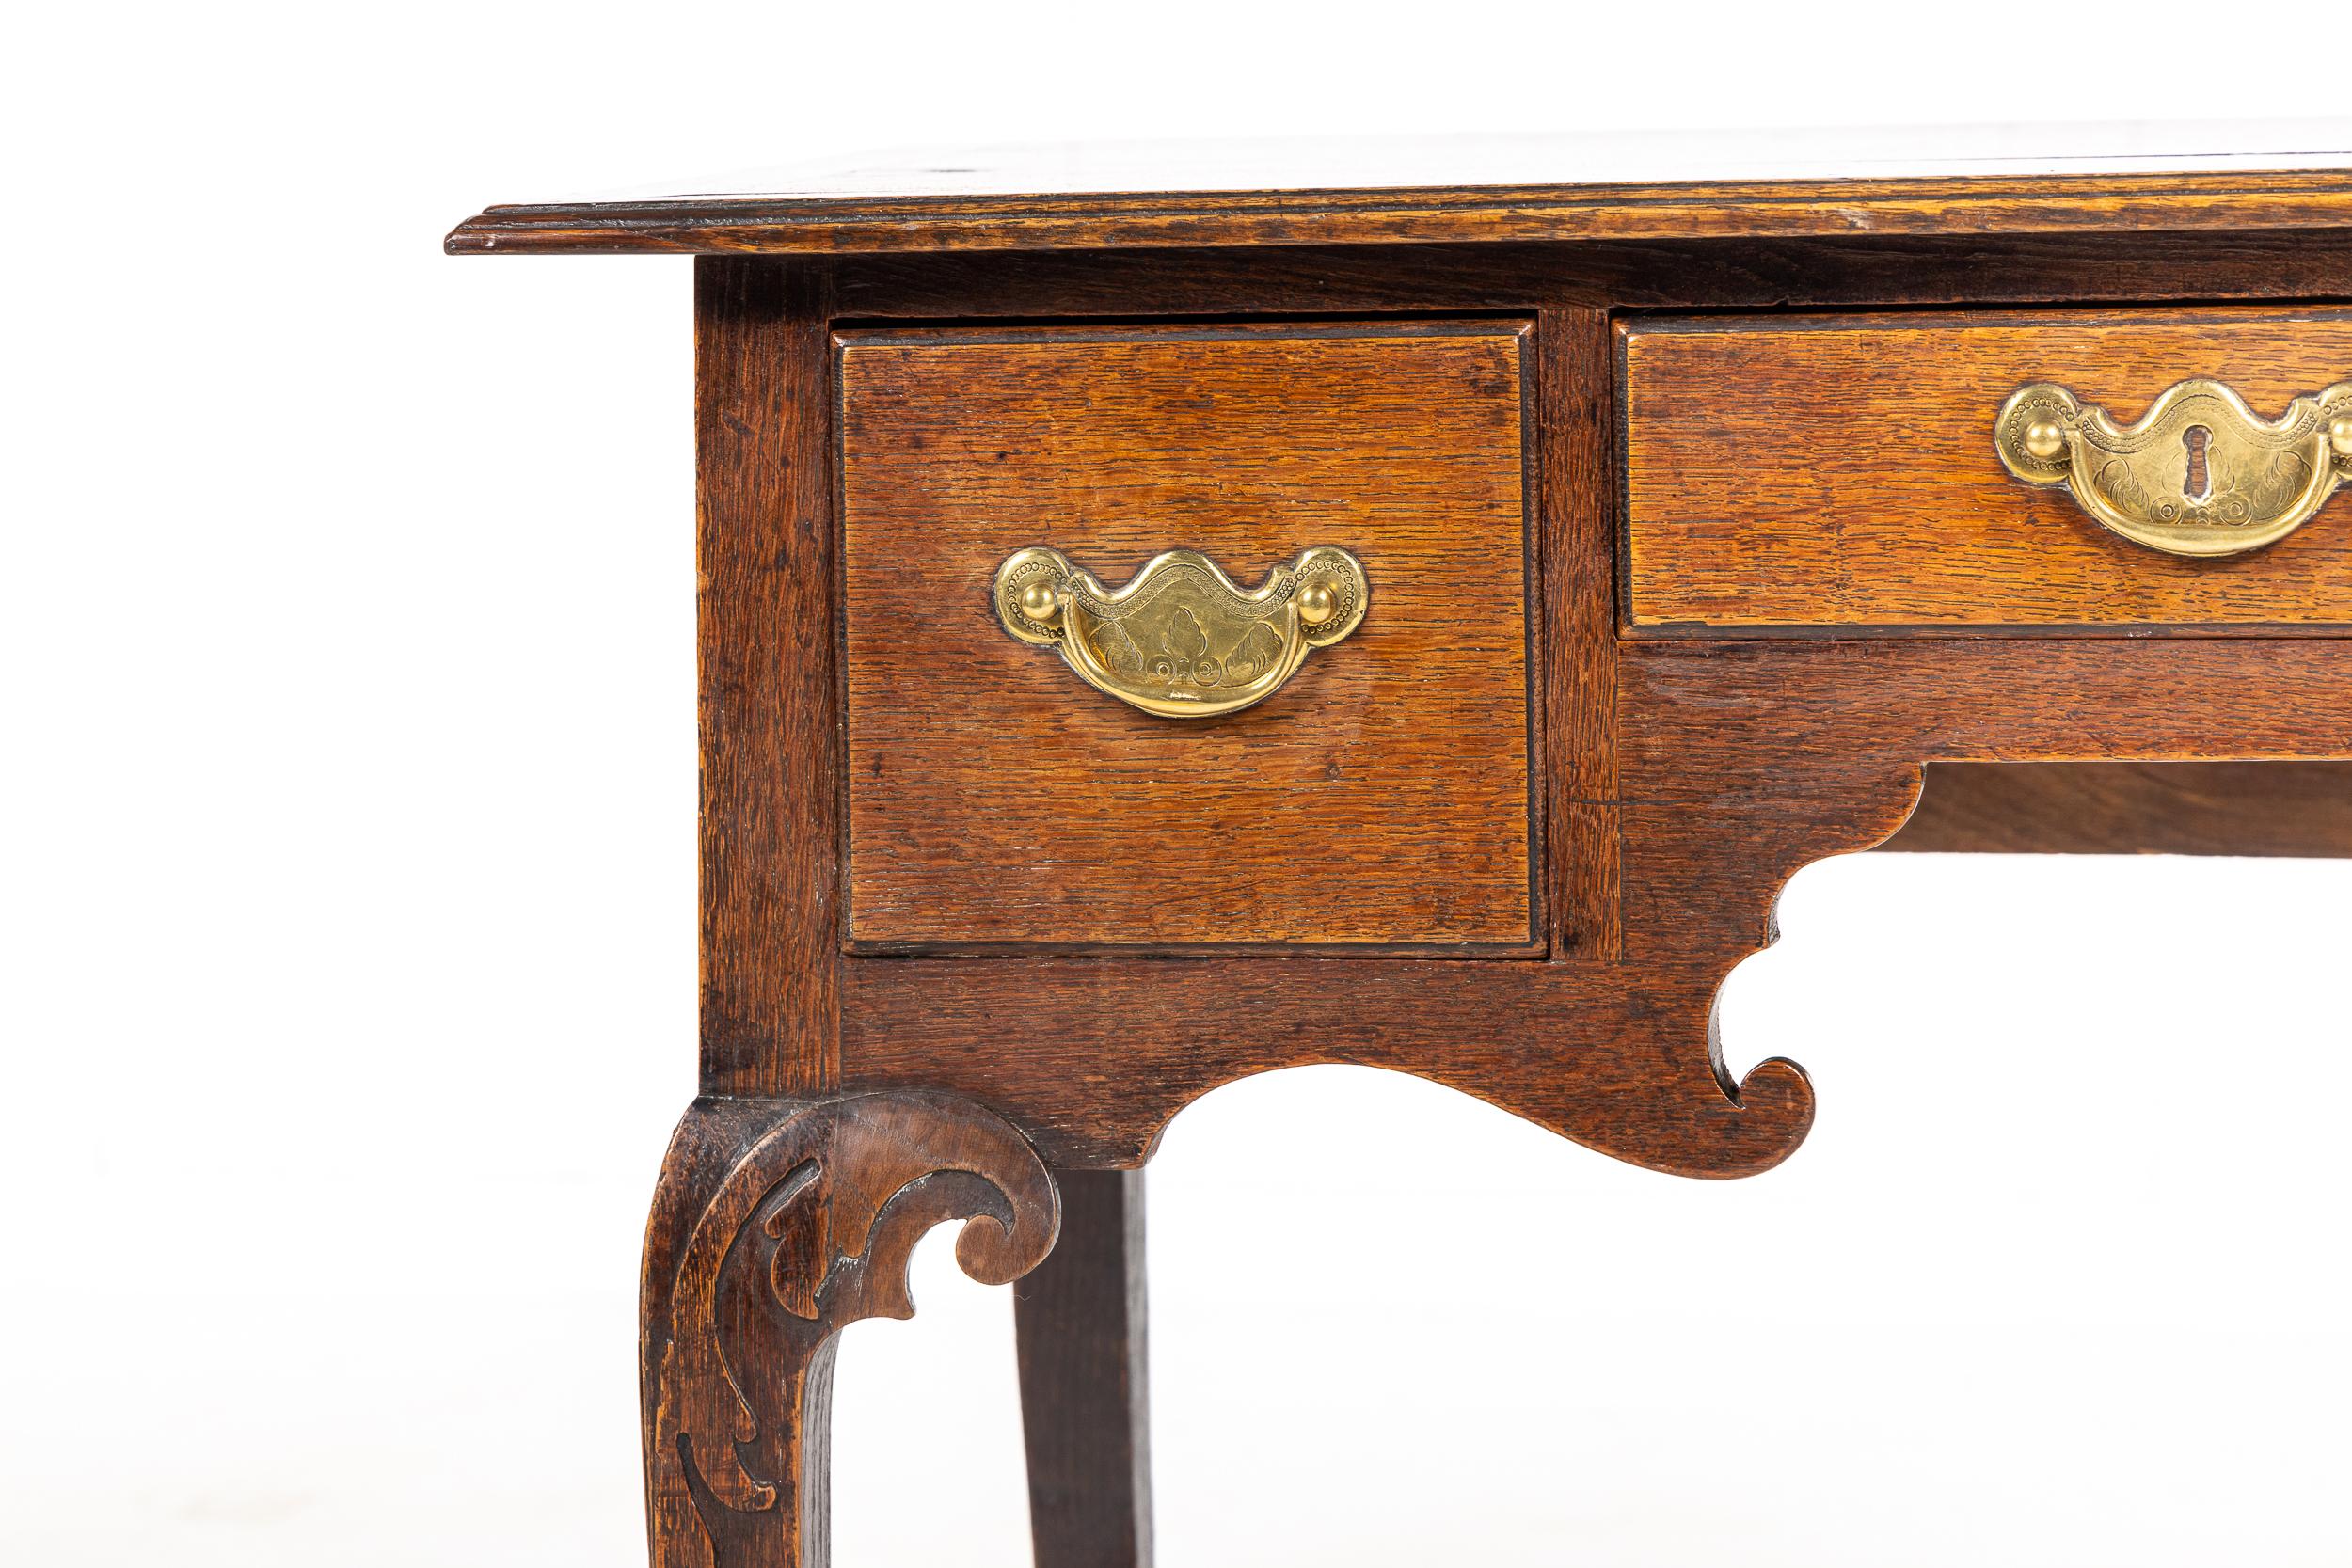 Eichenholz-Lowboy aus dem 18. Jahrhundert mit profiliertem Rand. Drei Schubladen mit originalen Messinggriffen, darunter eine schön geschnitzte, geformte Schürze. Auf langen, formschönen Cabriole-Beinen mit aufwändig geschnitzten Knien, die in